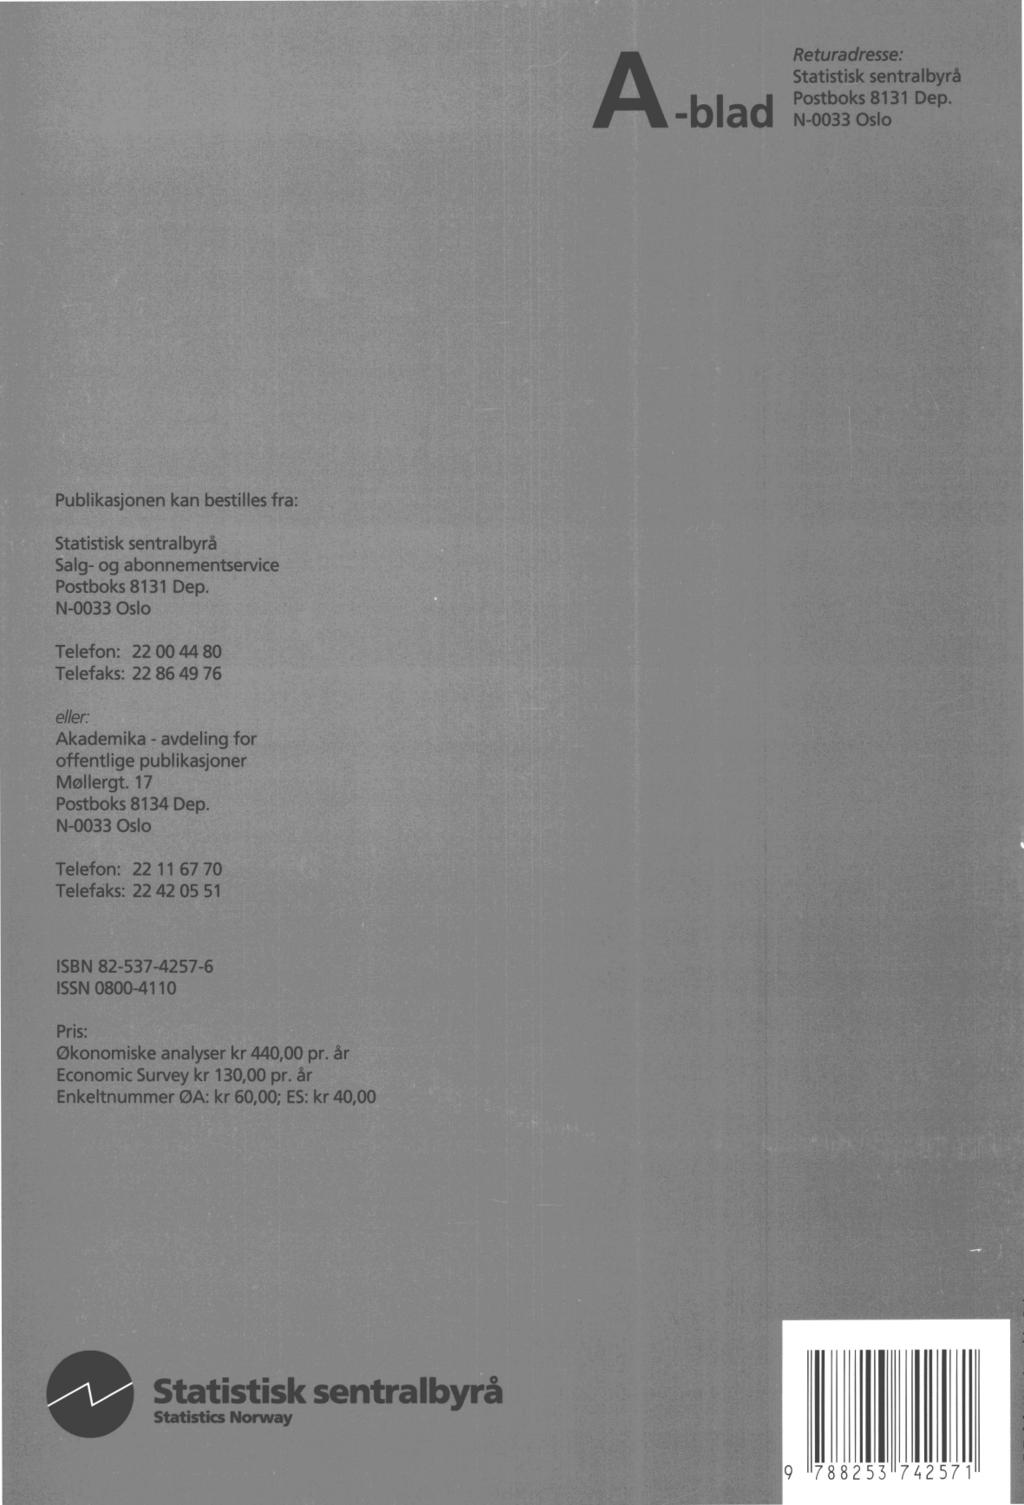 Returadresse: Statistisk sentralbyrå Postboks 8131 Dep. N-0033 Oslo A-blad Publikasjonen kan bestilles fra: Statistisk sentralbyrå Salg- og abonnementservice Postboks 8131 Dep.